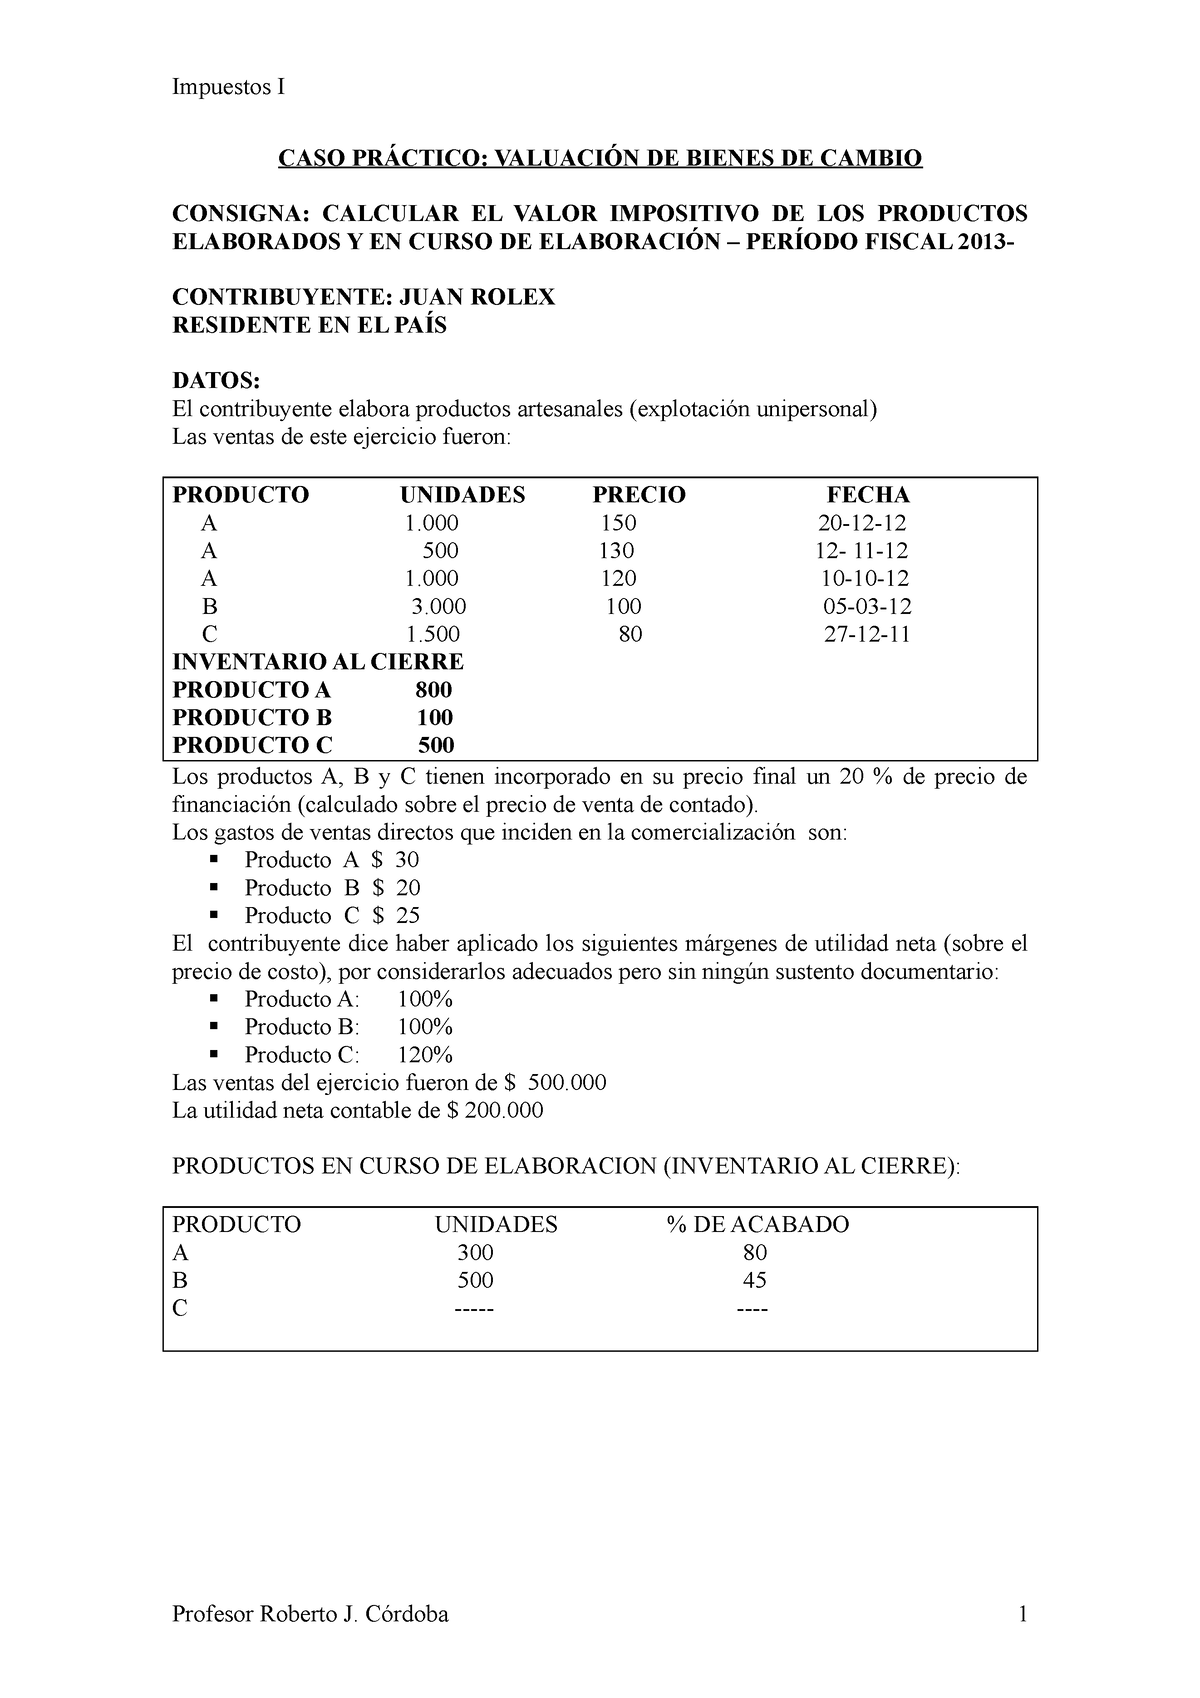 Ejercicios 11 Valuacion Inventarios Impuestos I Caso PrÁctico ValuaciÓn De Bienes De Cambio 9406